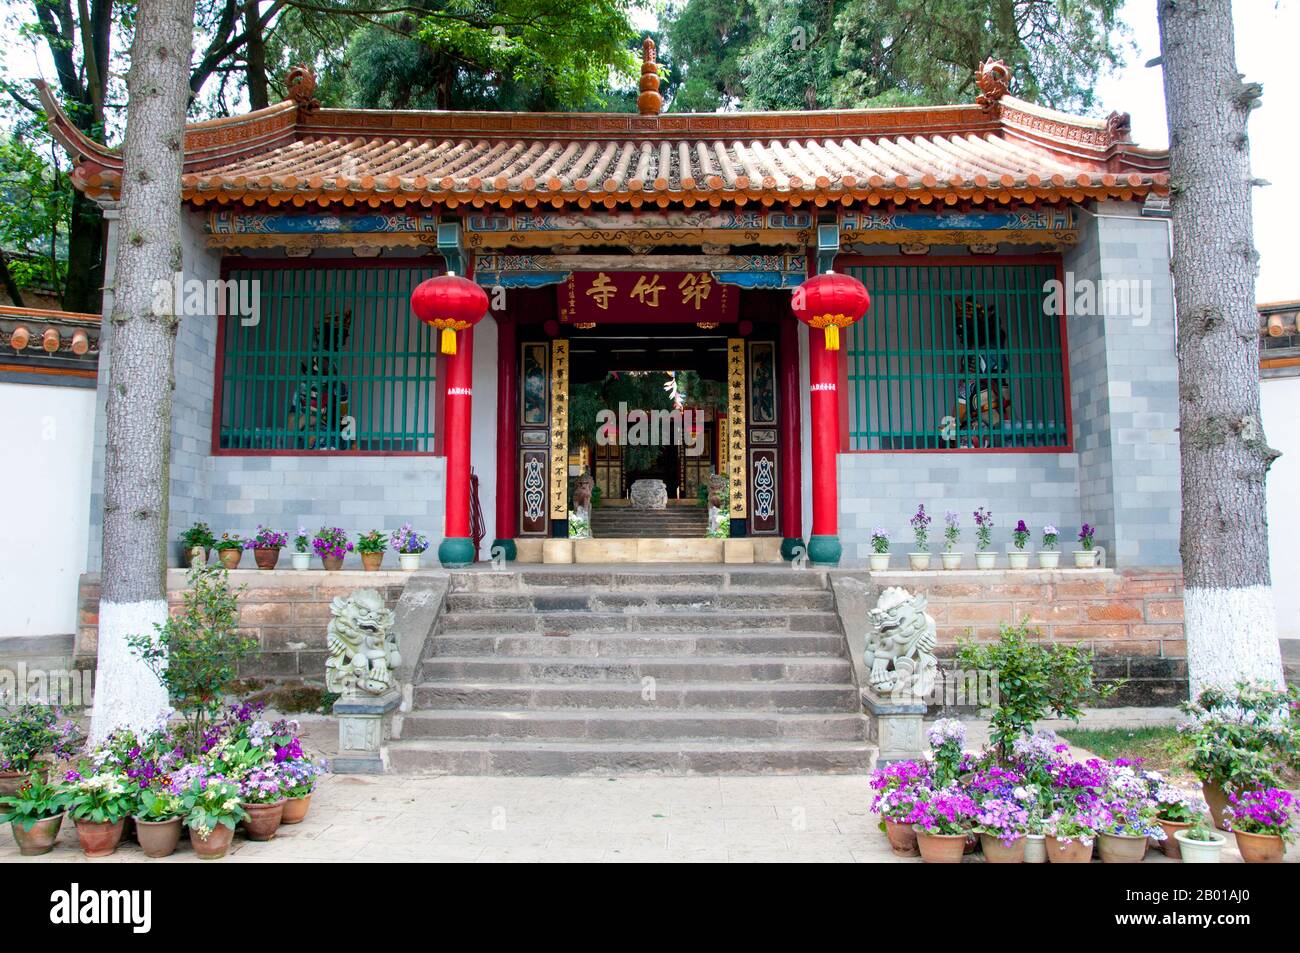 China: Eingang zum Qiongzhu Si (Bambustempel), nordwestlich von Kunming, Provinz Yunnan. Qiongzhu Si wurde ursprünglich während der Tang-Dynastie (618-907) erbaut, wurde aber während der Yuan-Dynastie (1271-1368) als erster Tempel, der dem Zen-Buddhismus in Yunnan gewidmet war, ordnungsgemäß errichtet. Der Tempel ist berühmt für seine 500 bemalten Arhats, die während der Herrschaft des Qing-Imperators Guangxu (1875-1909) vom Bildhauer Li Guangxiu geschaffen wurden. Stockfoto